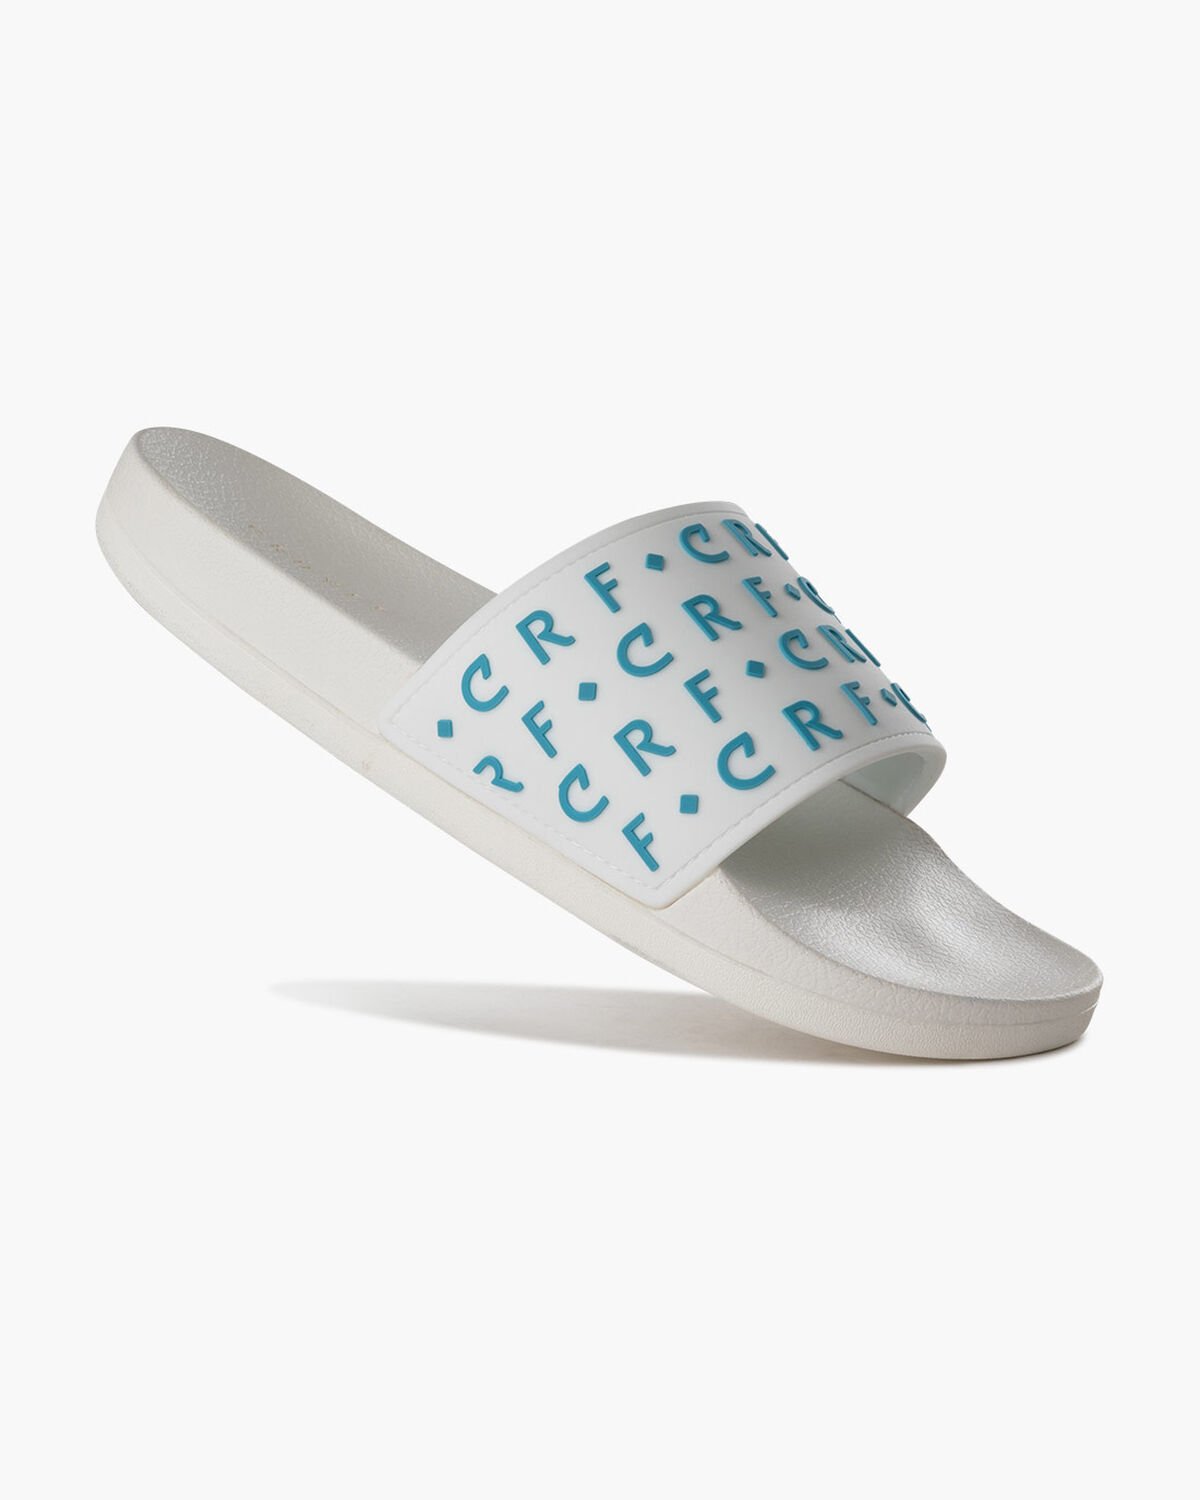 CRF Slide - Gommata, White/Blue, hi-res